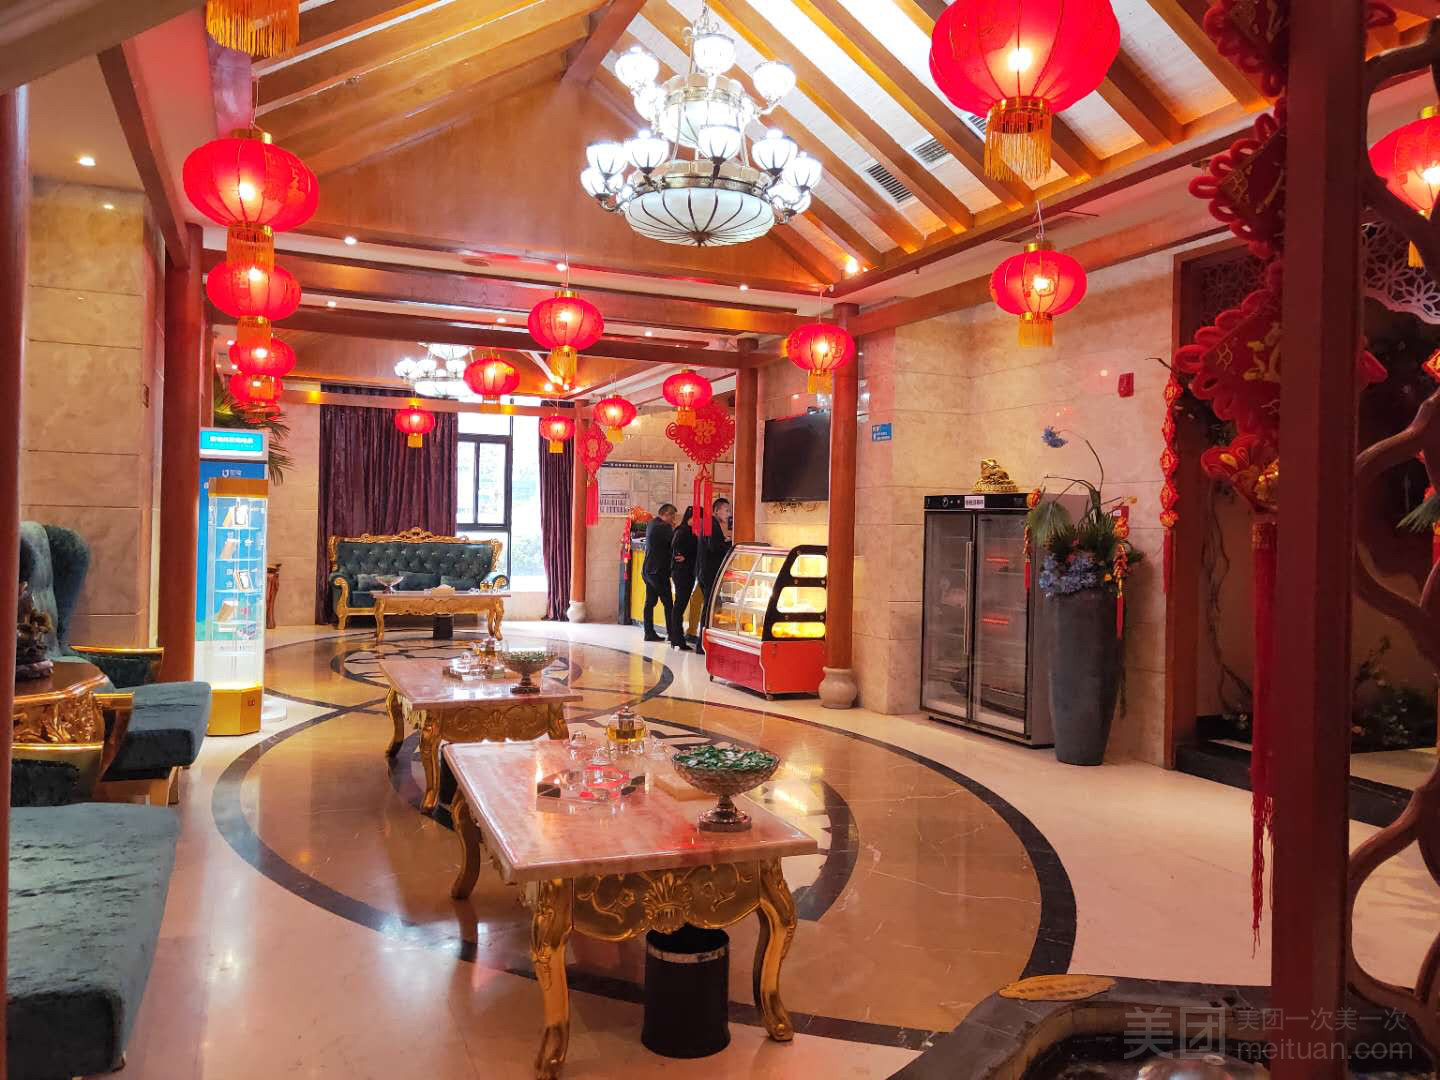 朋友介绍上海青浦区招牌保养休闲会所店，环境非常nice，服务很热情